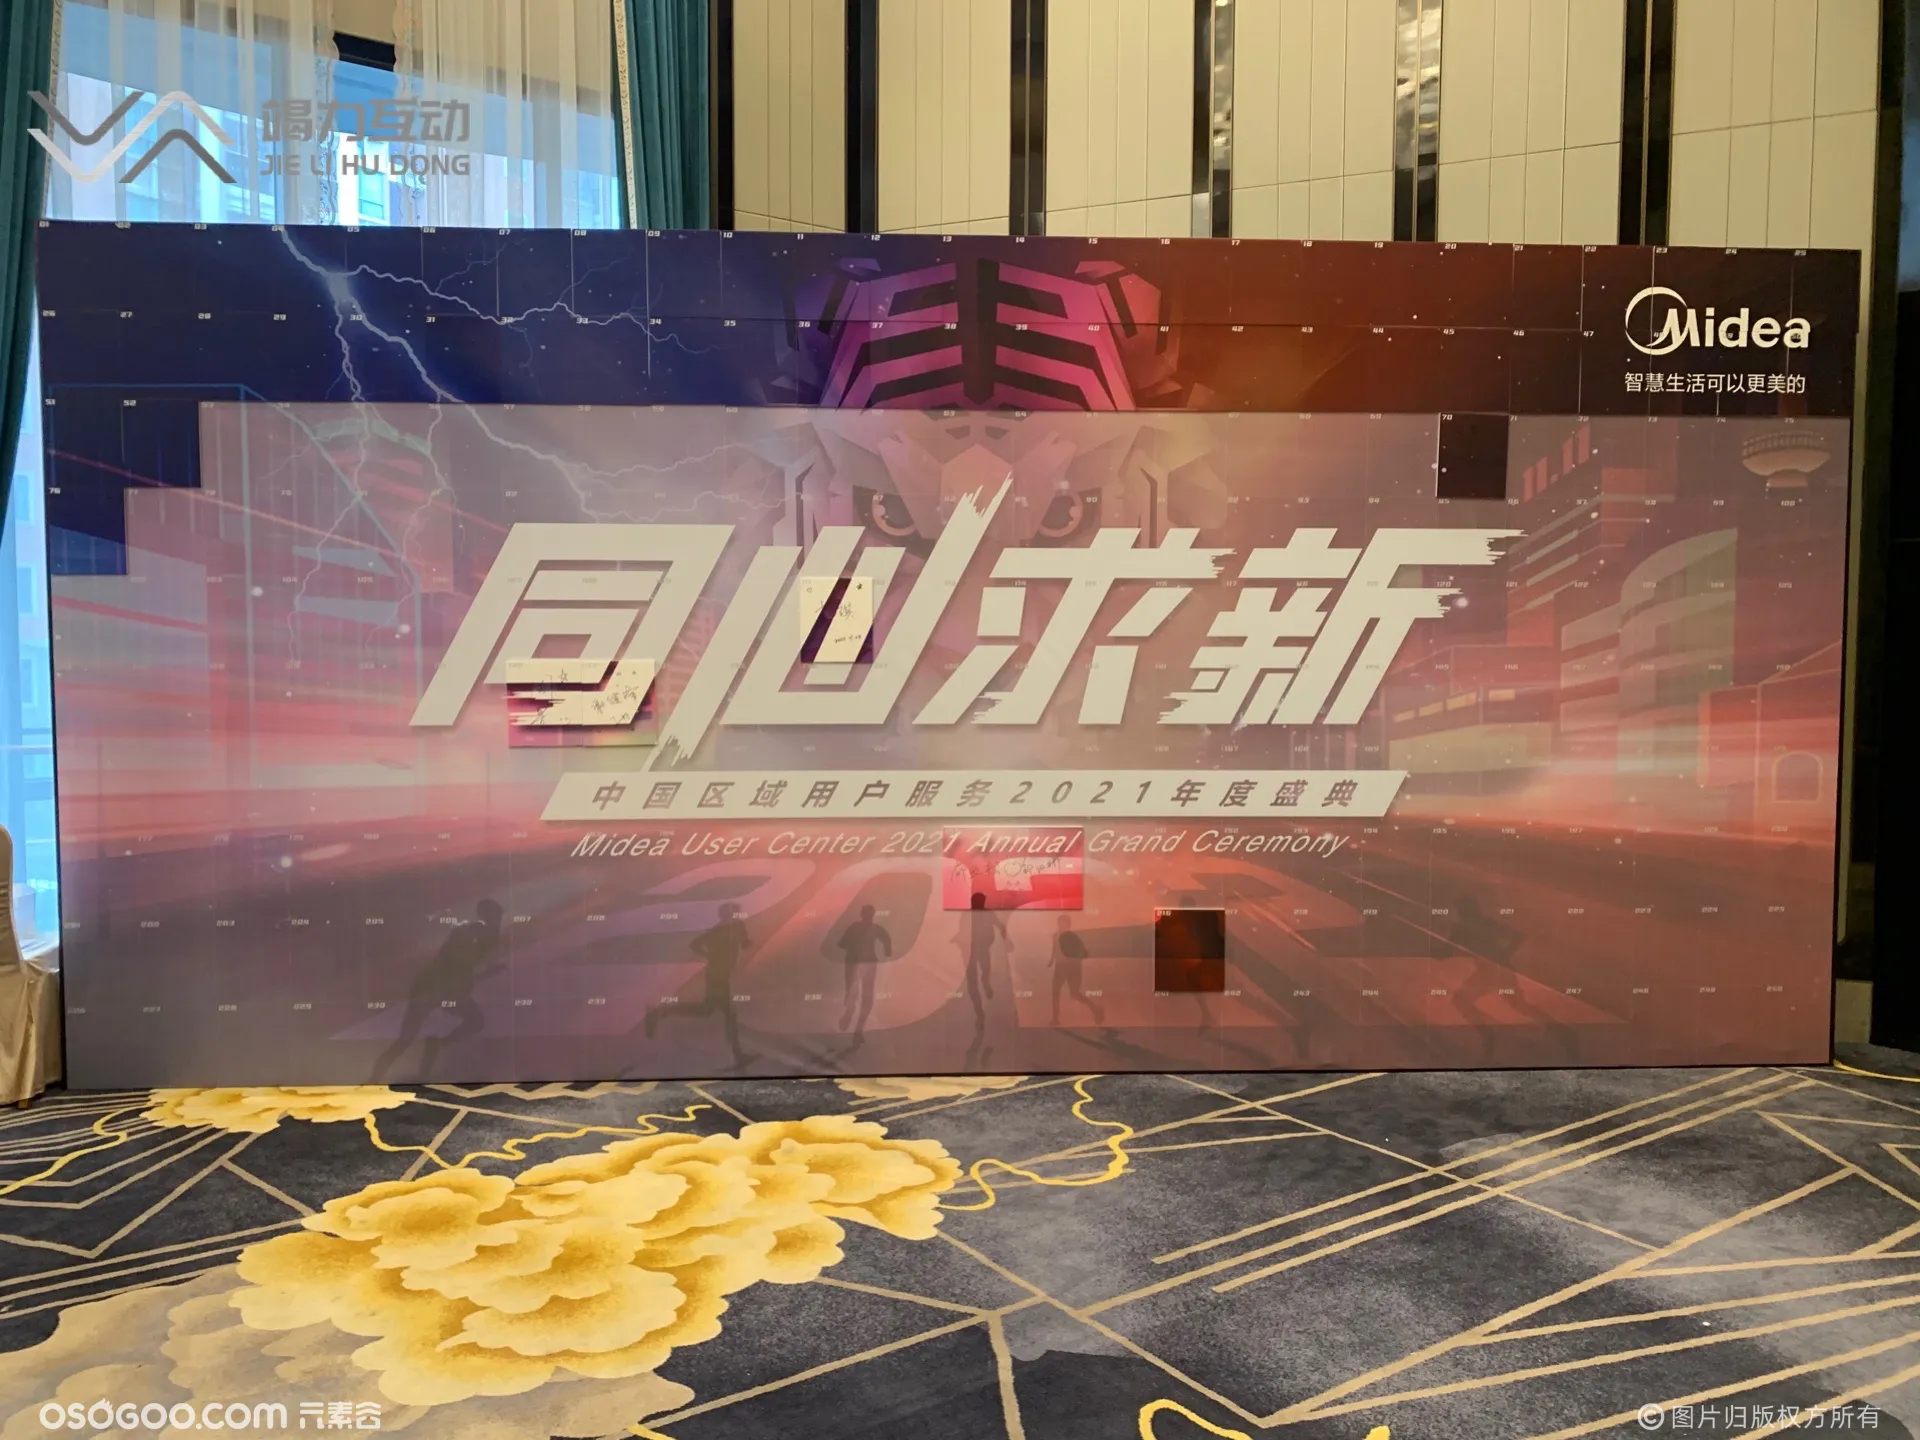 2021美的中国区年度盛典/光绘涂鸦艺术签到互动装置